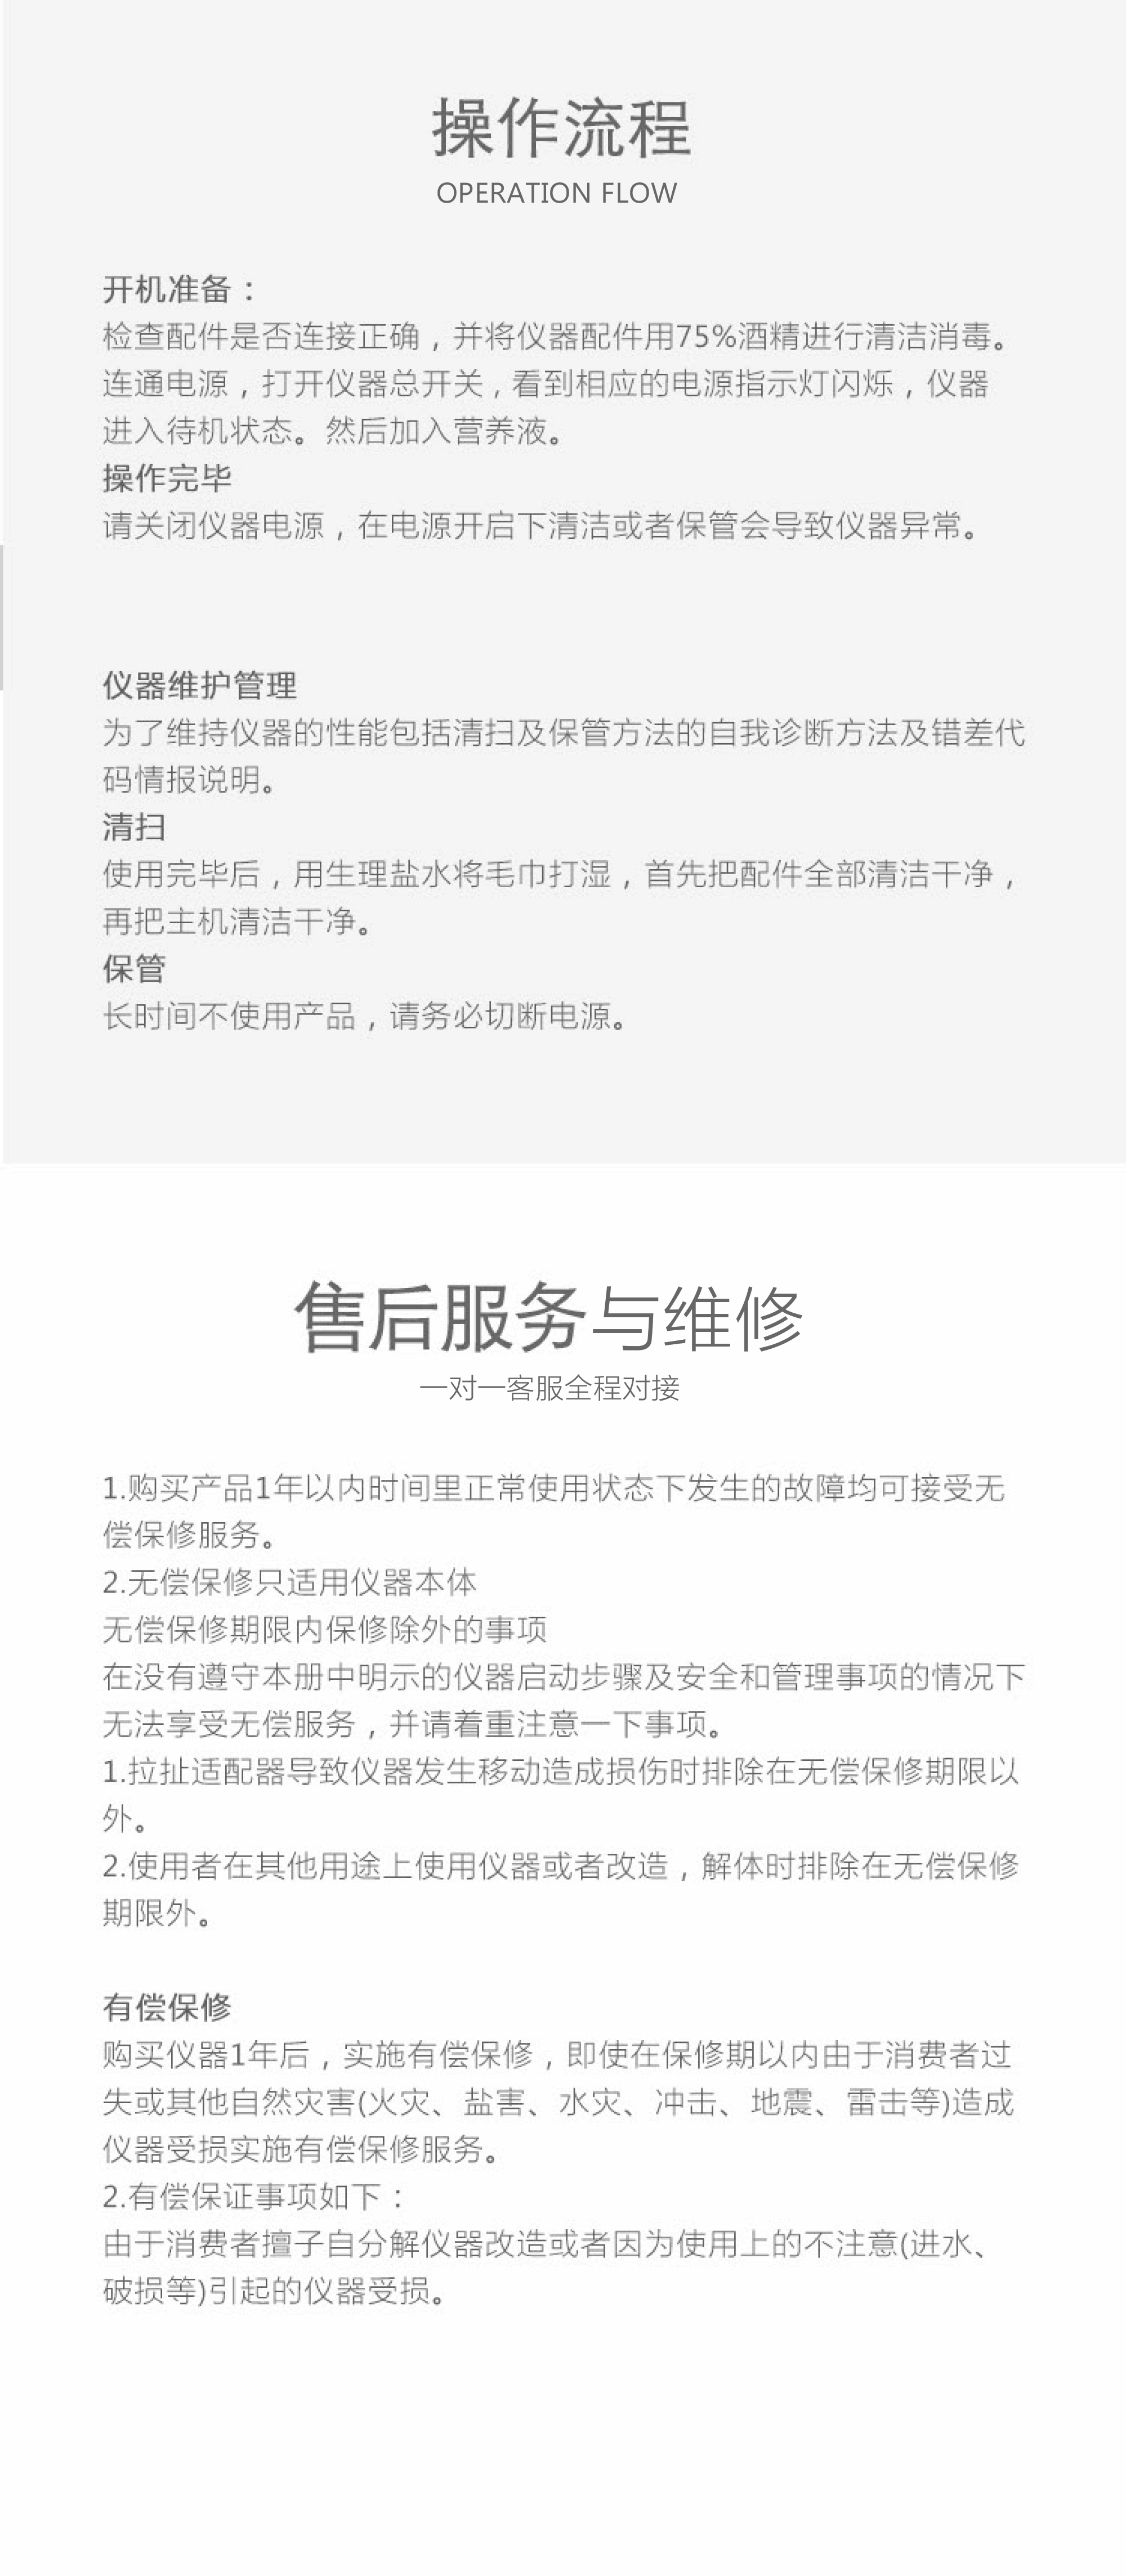 Bộ tổng hợp hiệu quả cao Therapeel Xiu Muning: -5